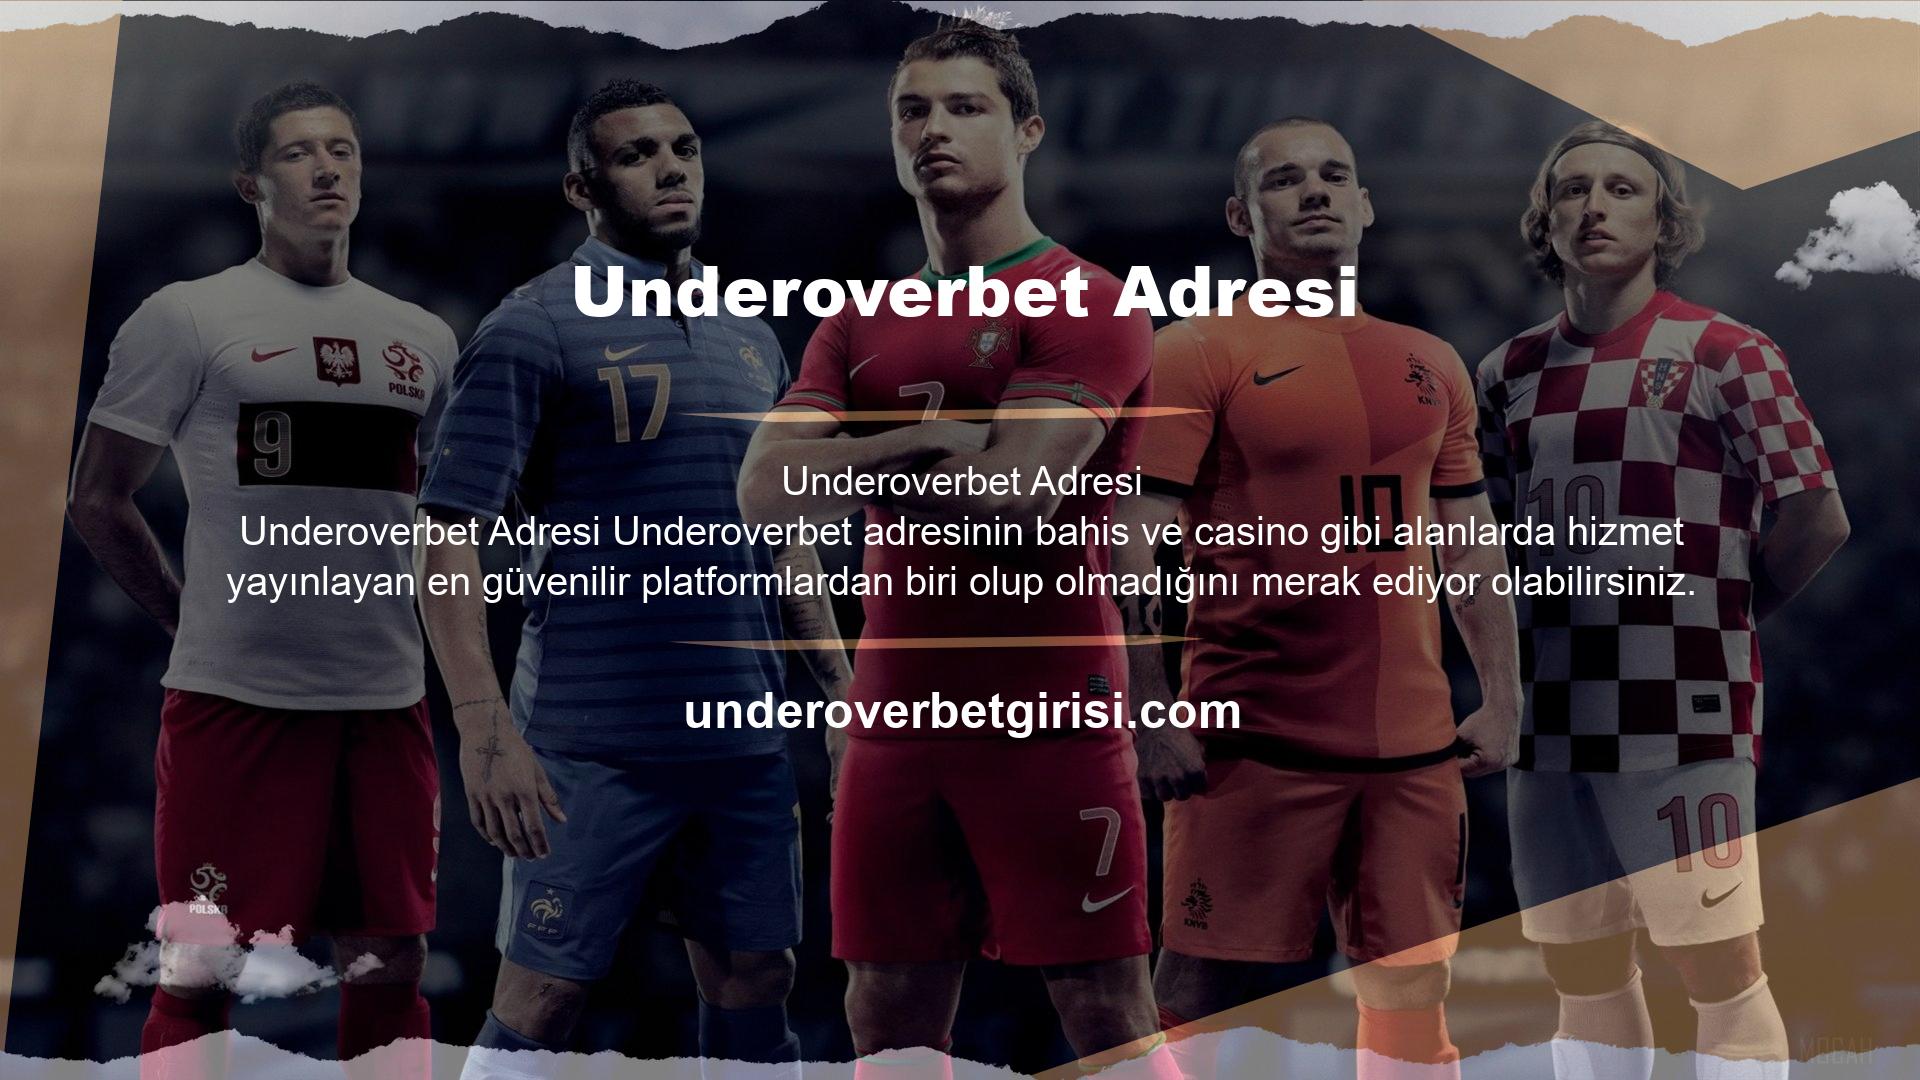 Underoverbet, oyun pazarındaki en büyük oyunculardan biri olarak tanımlandı ve web sitesi çoğunlukla Underoverbet olarak güncelleniyor